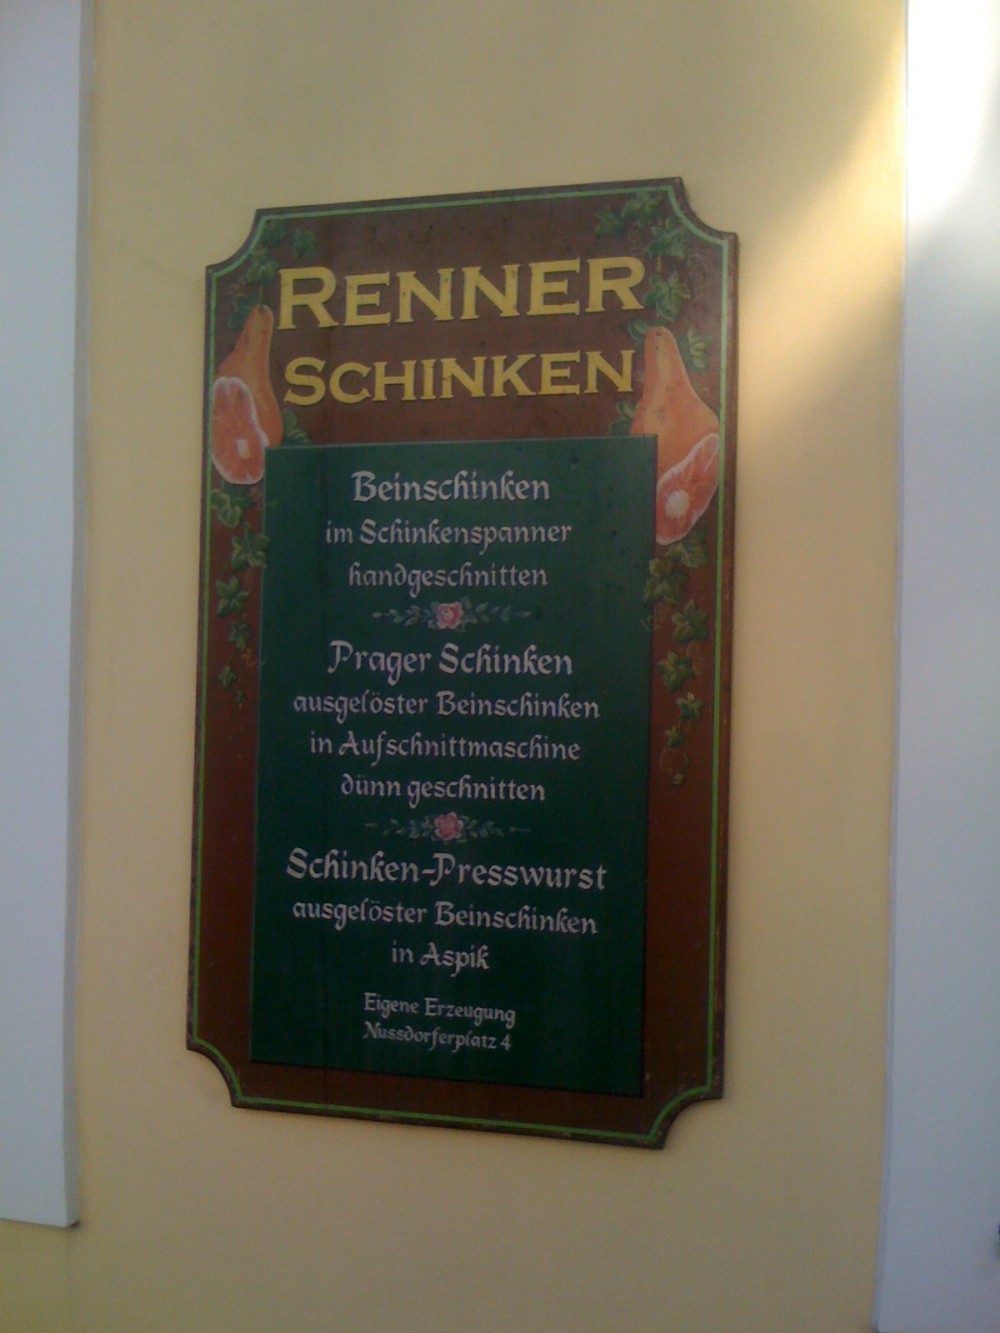 Zum Renner - Wien